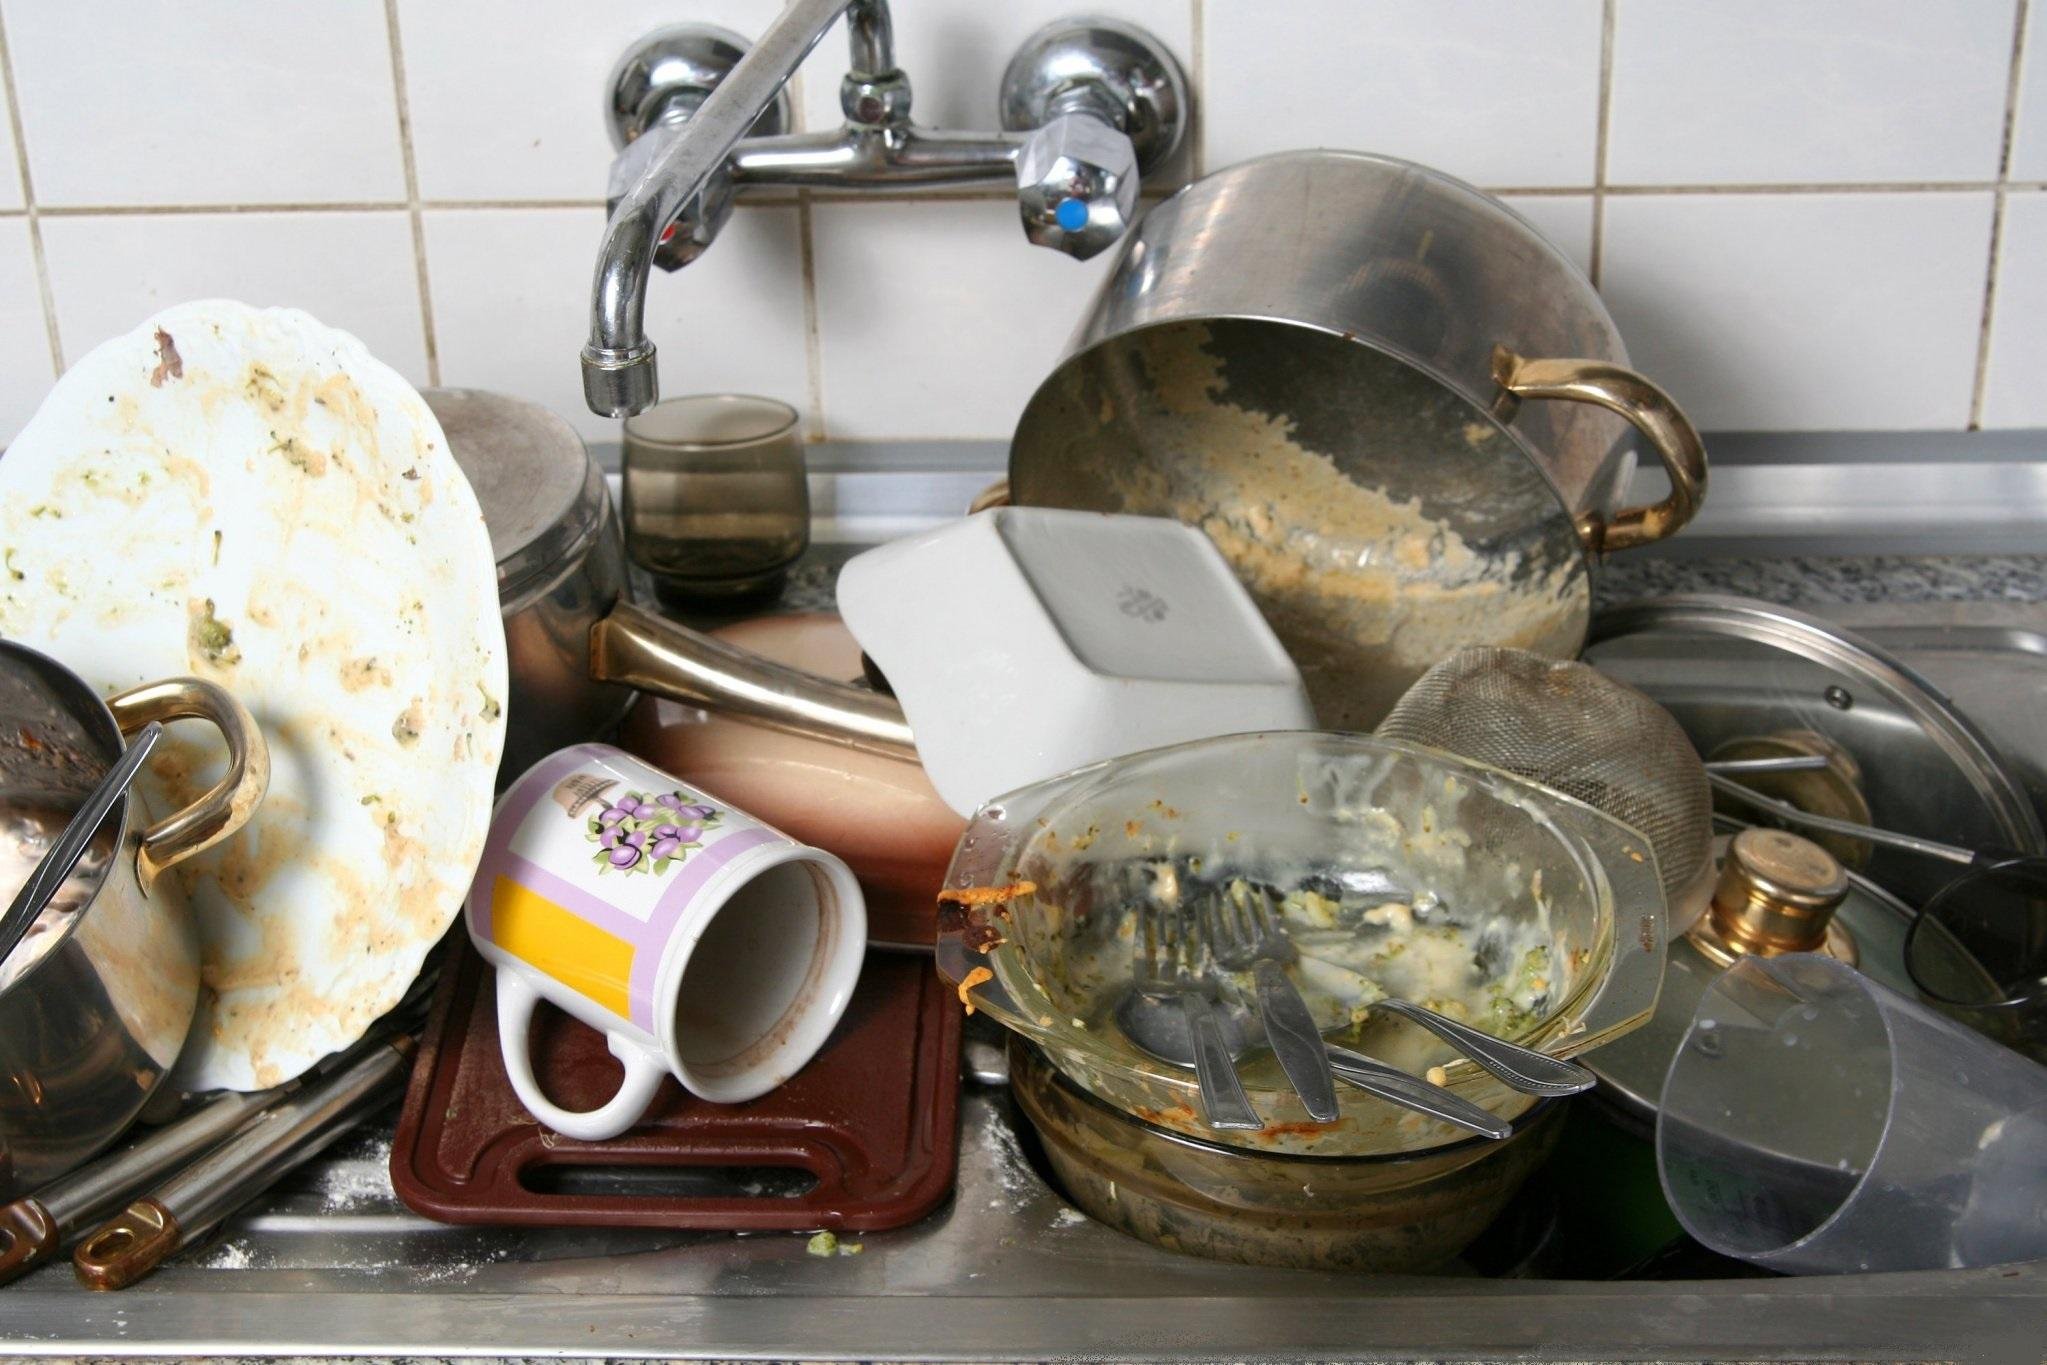 Много мытой посуды. Гора посуды. Грязная посуда. Грязная посуда на кухне. Немытая посуда в раковине.